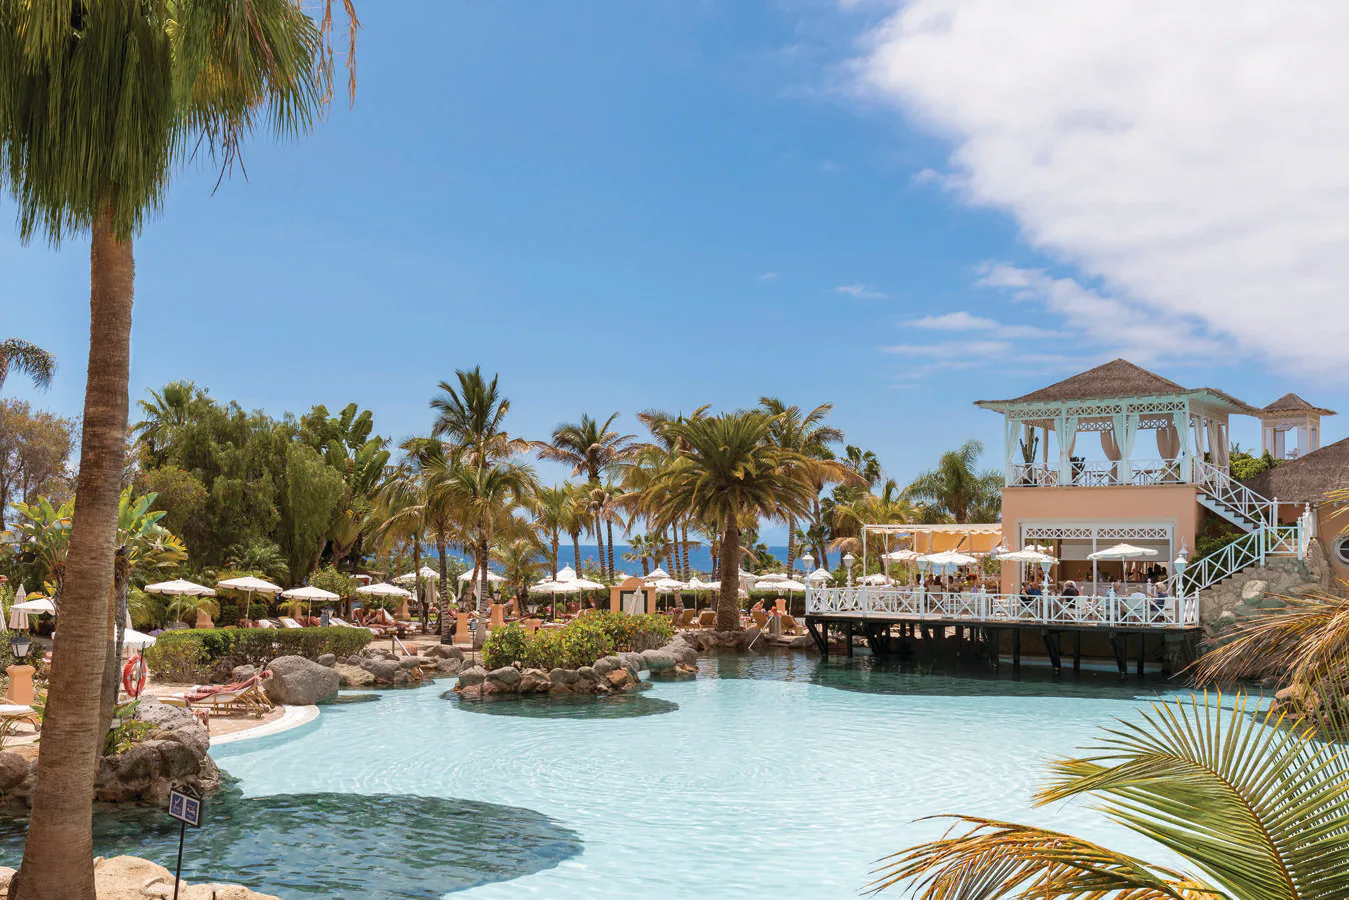 Mejor servicio de hotel. El Hotel Bahía del Duque cuenta con 351 elegantes habitaciones algunas de ellas con balcón privado, 5 piscinas al aire libre y gimnasio. Precio: 280 euros / noche.